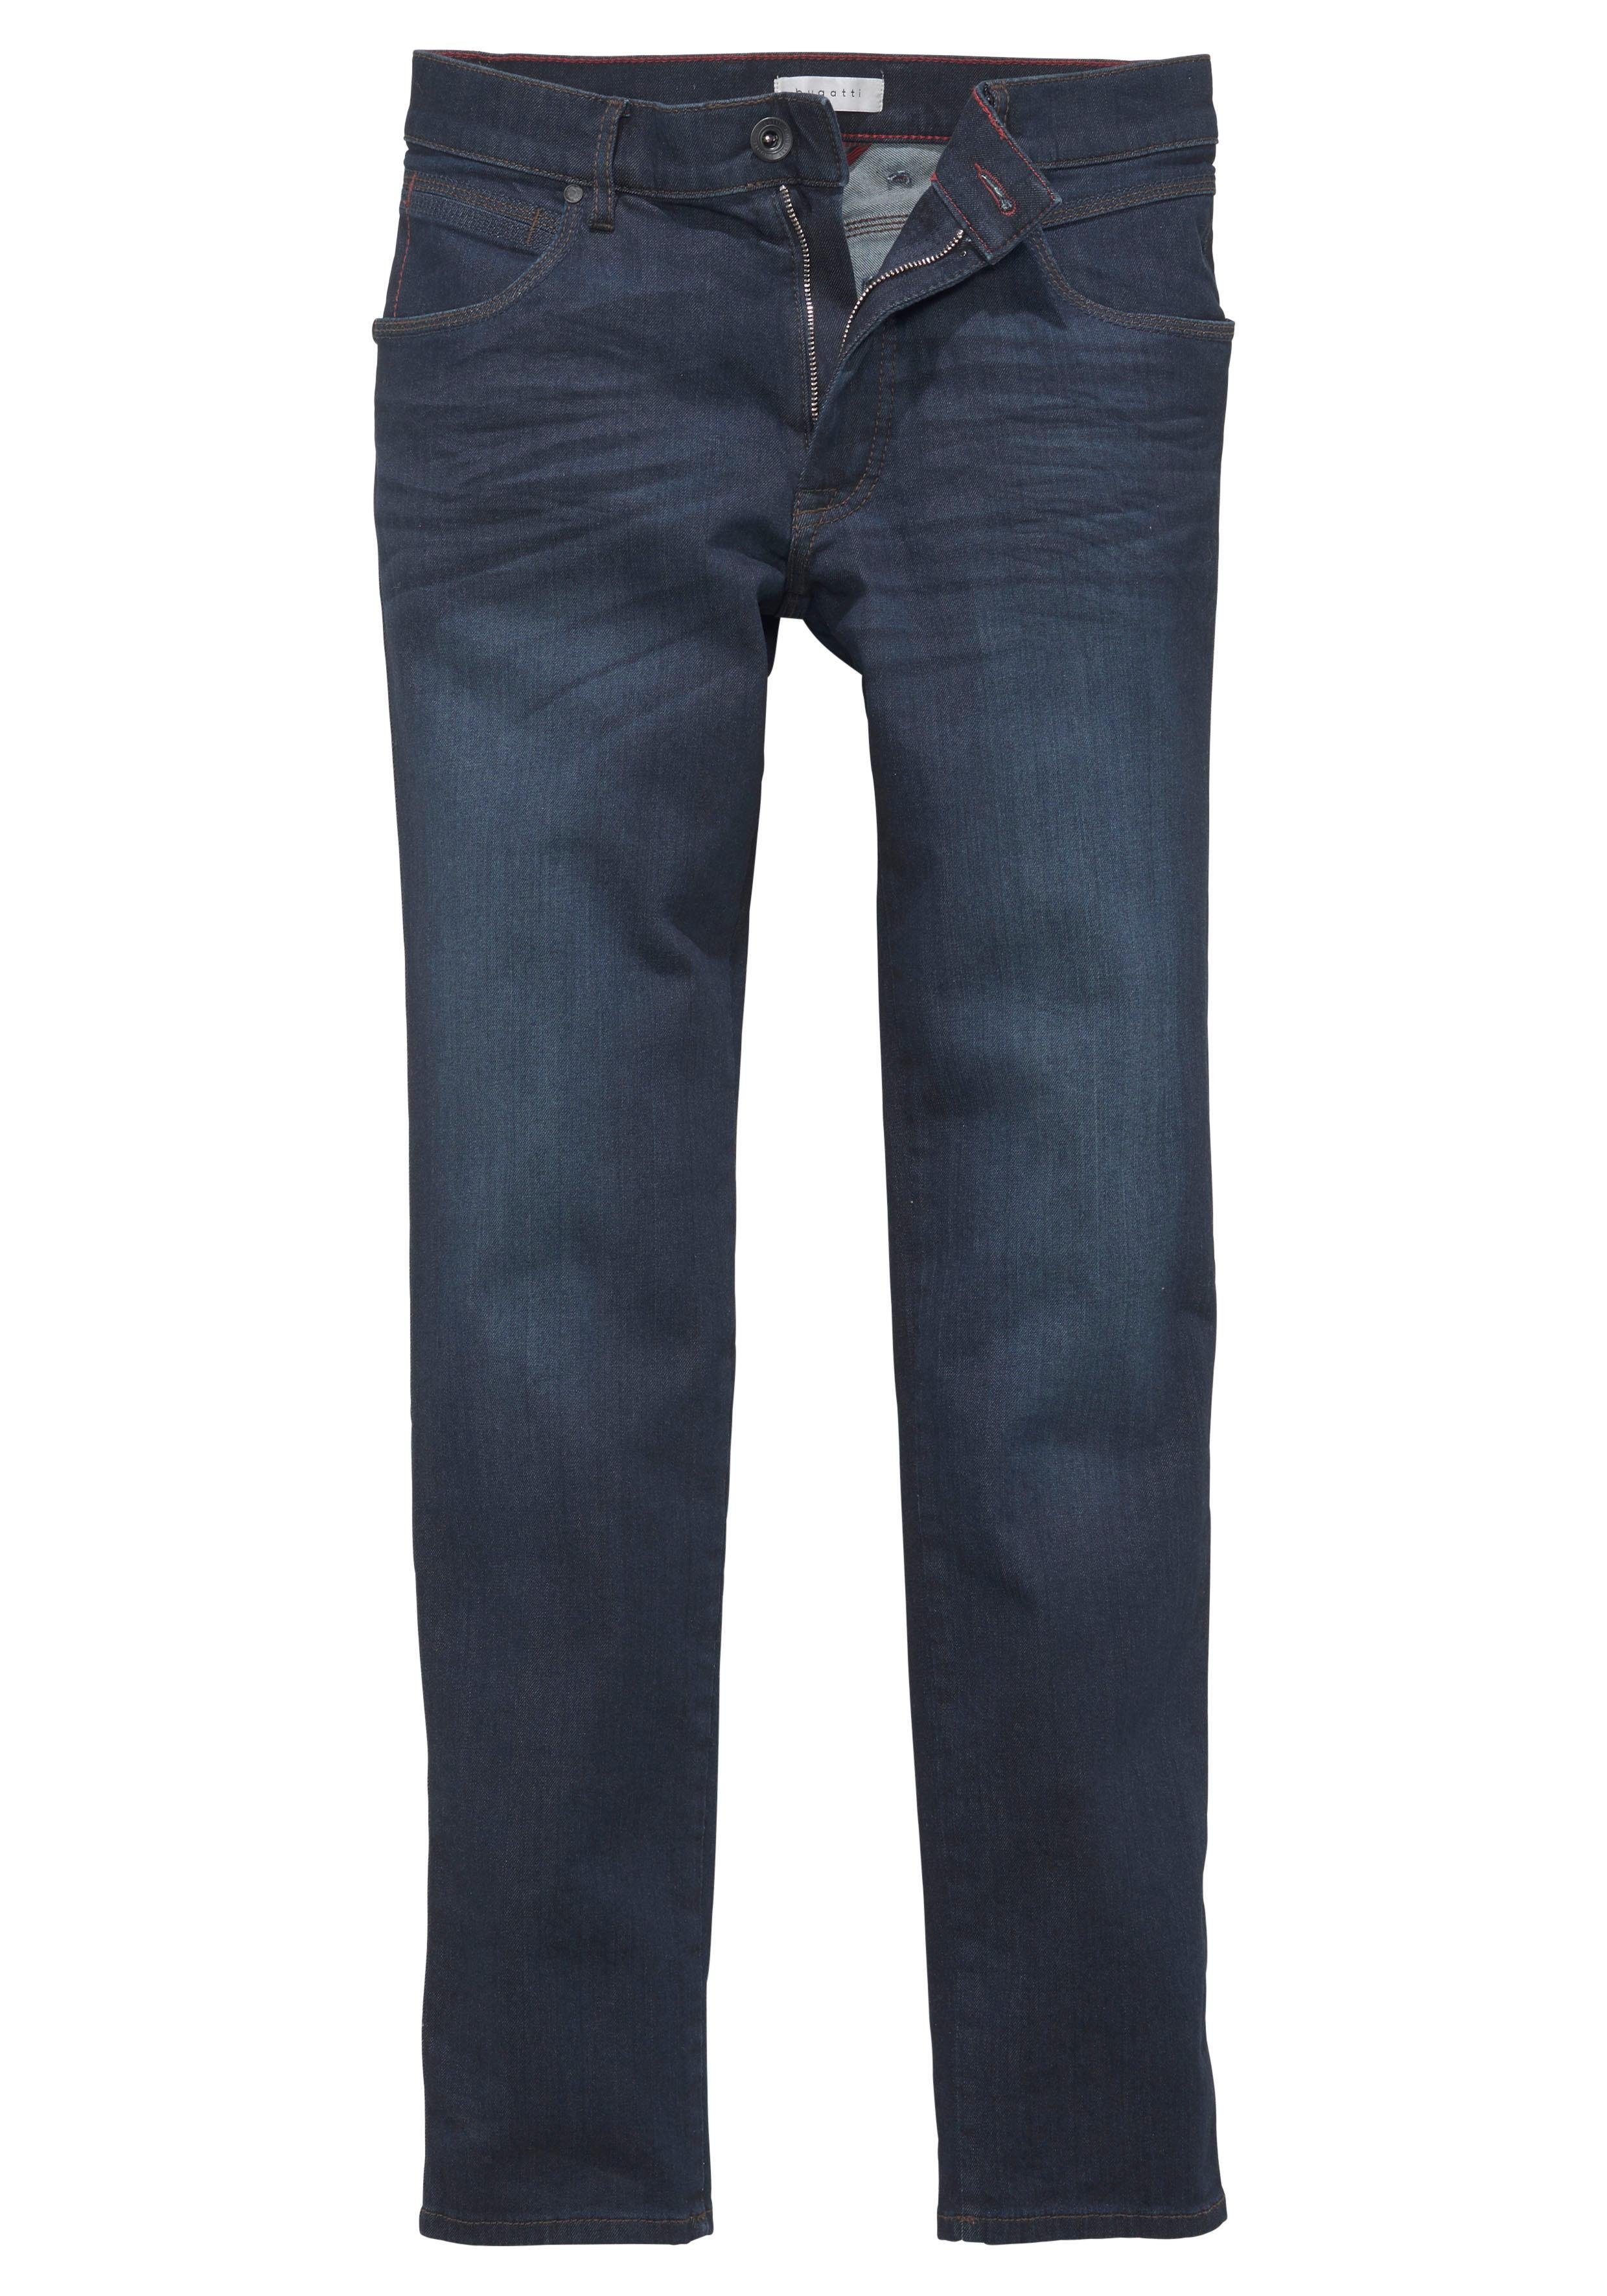 an sich Regular-fit-Jeans passt darkblue used34 Bewegung der bugatti Flexcity